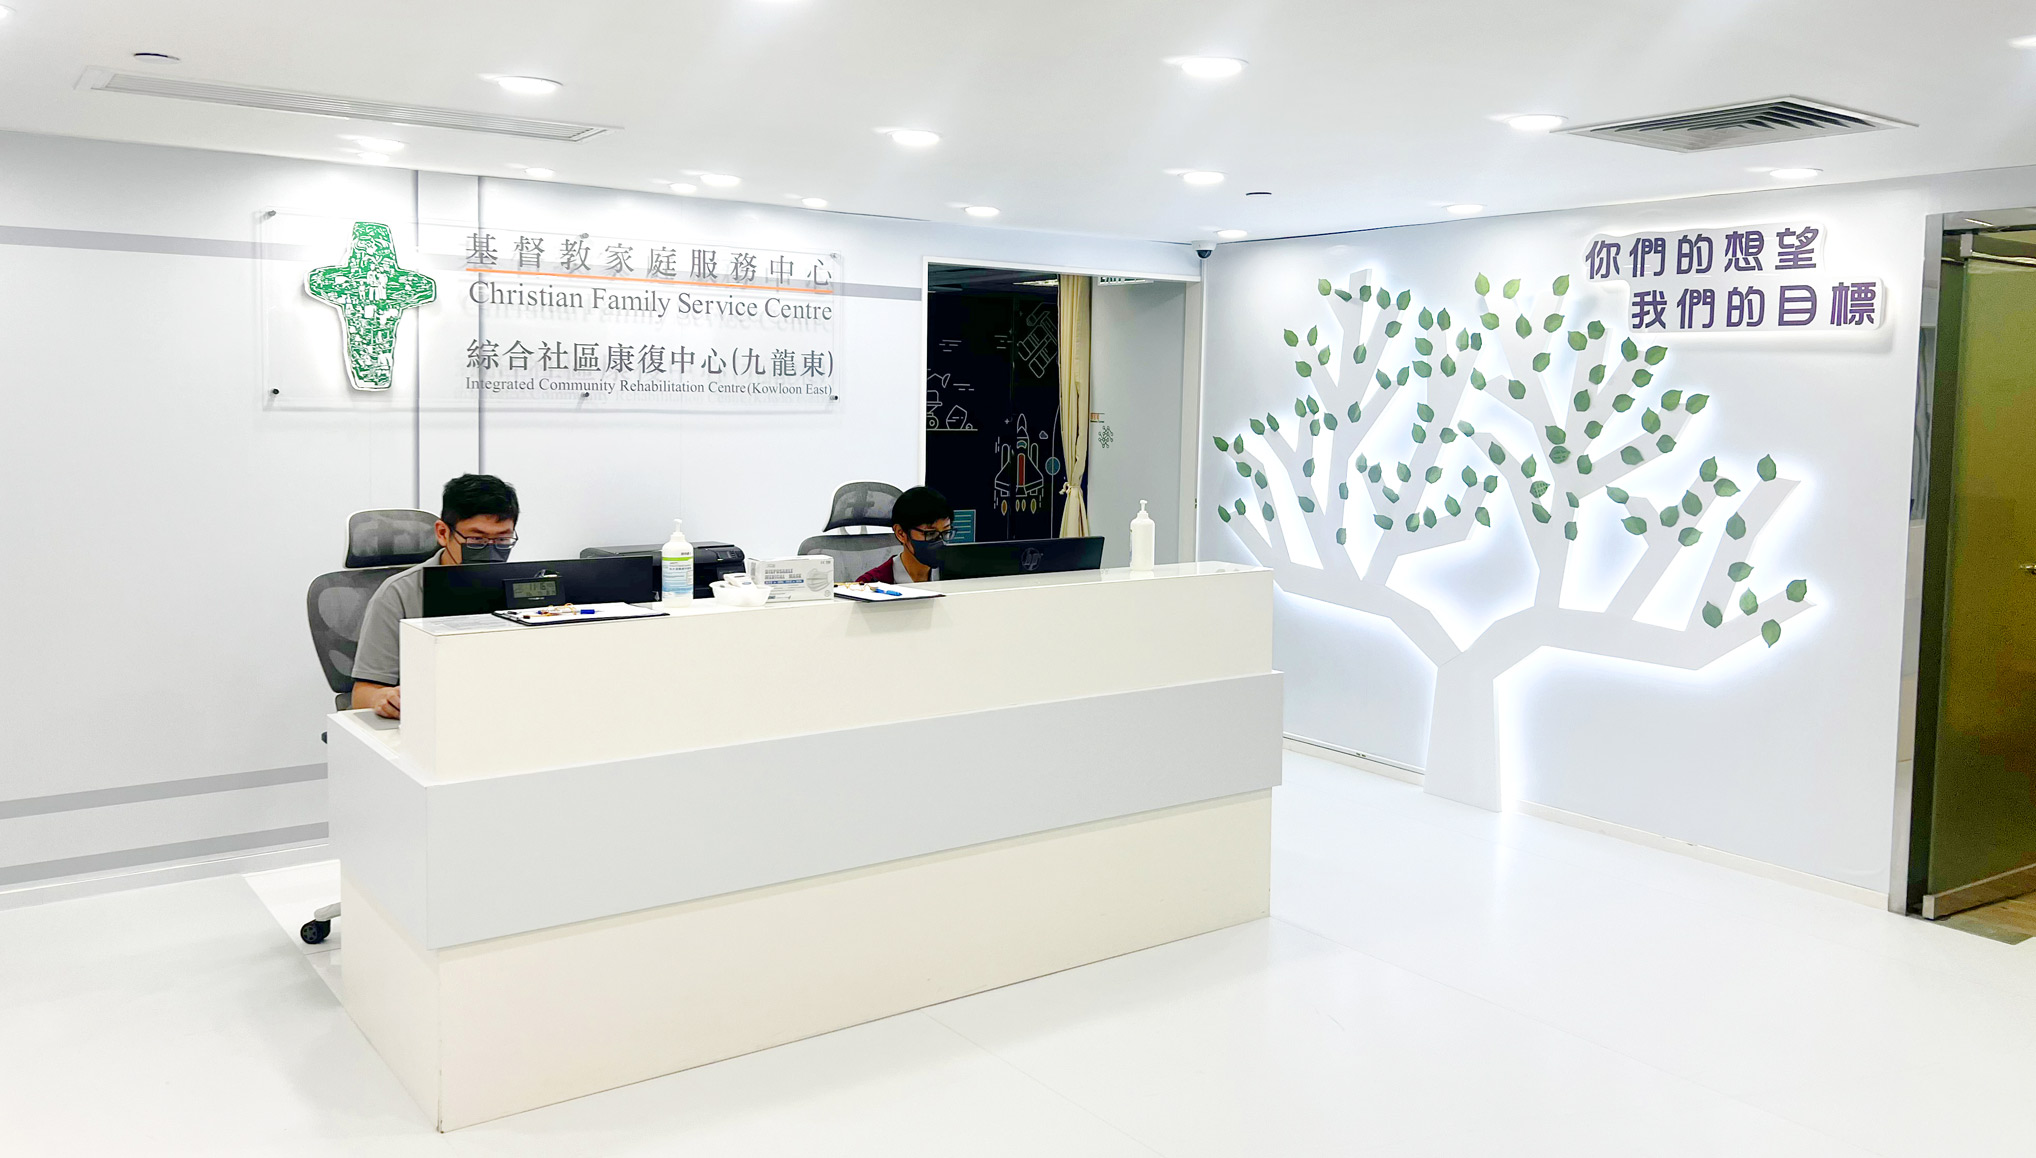 综合社区康复中心（九龙东）已於本月正式投入服务